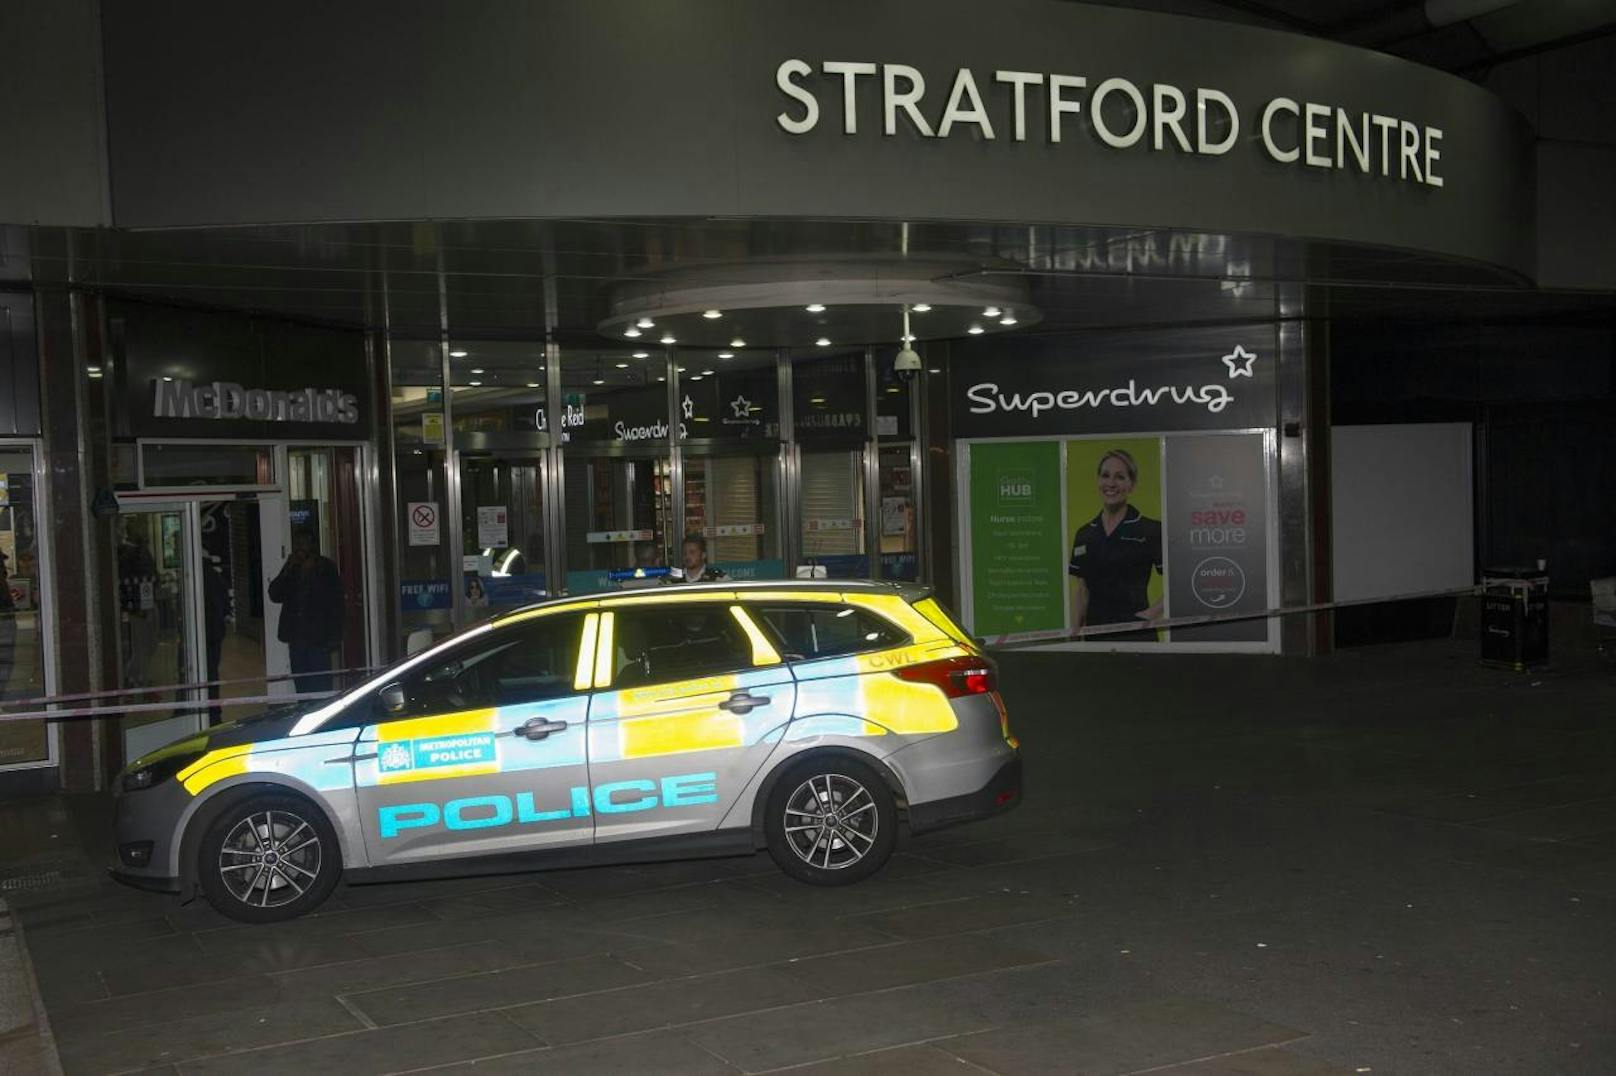 Unbekannte attackierten mehrere Personen im Londoner Stratford Einkaufszentrum mit Säure. 